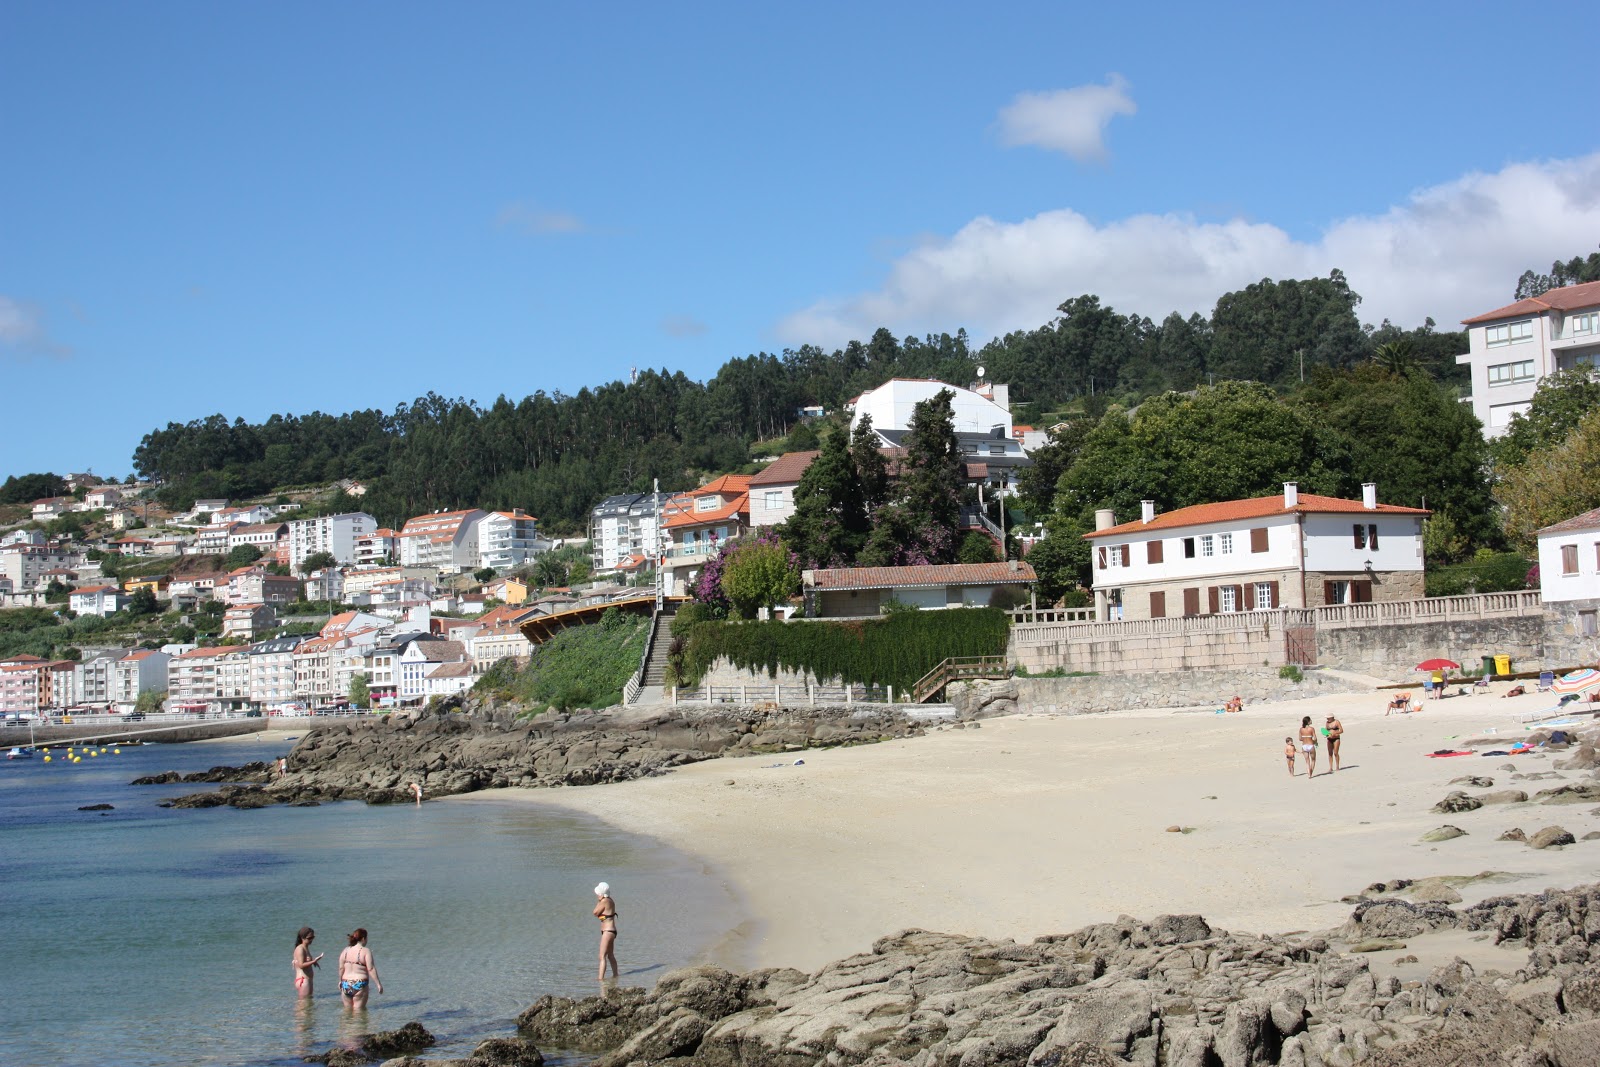 Praia de Sinas的照片 具有部分干净级别的清洁度